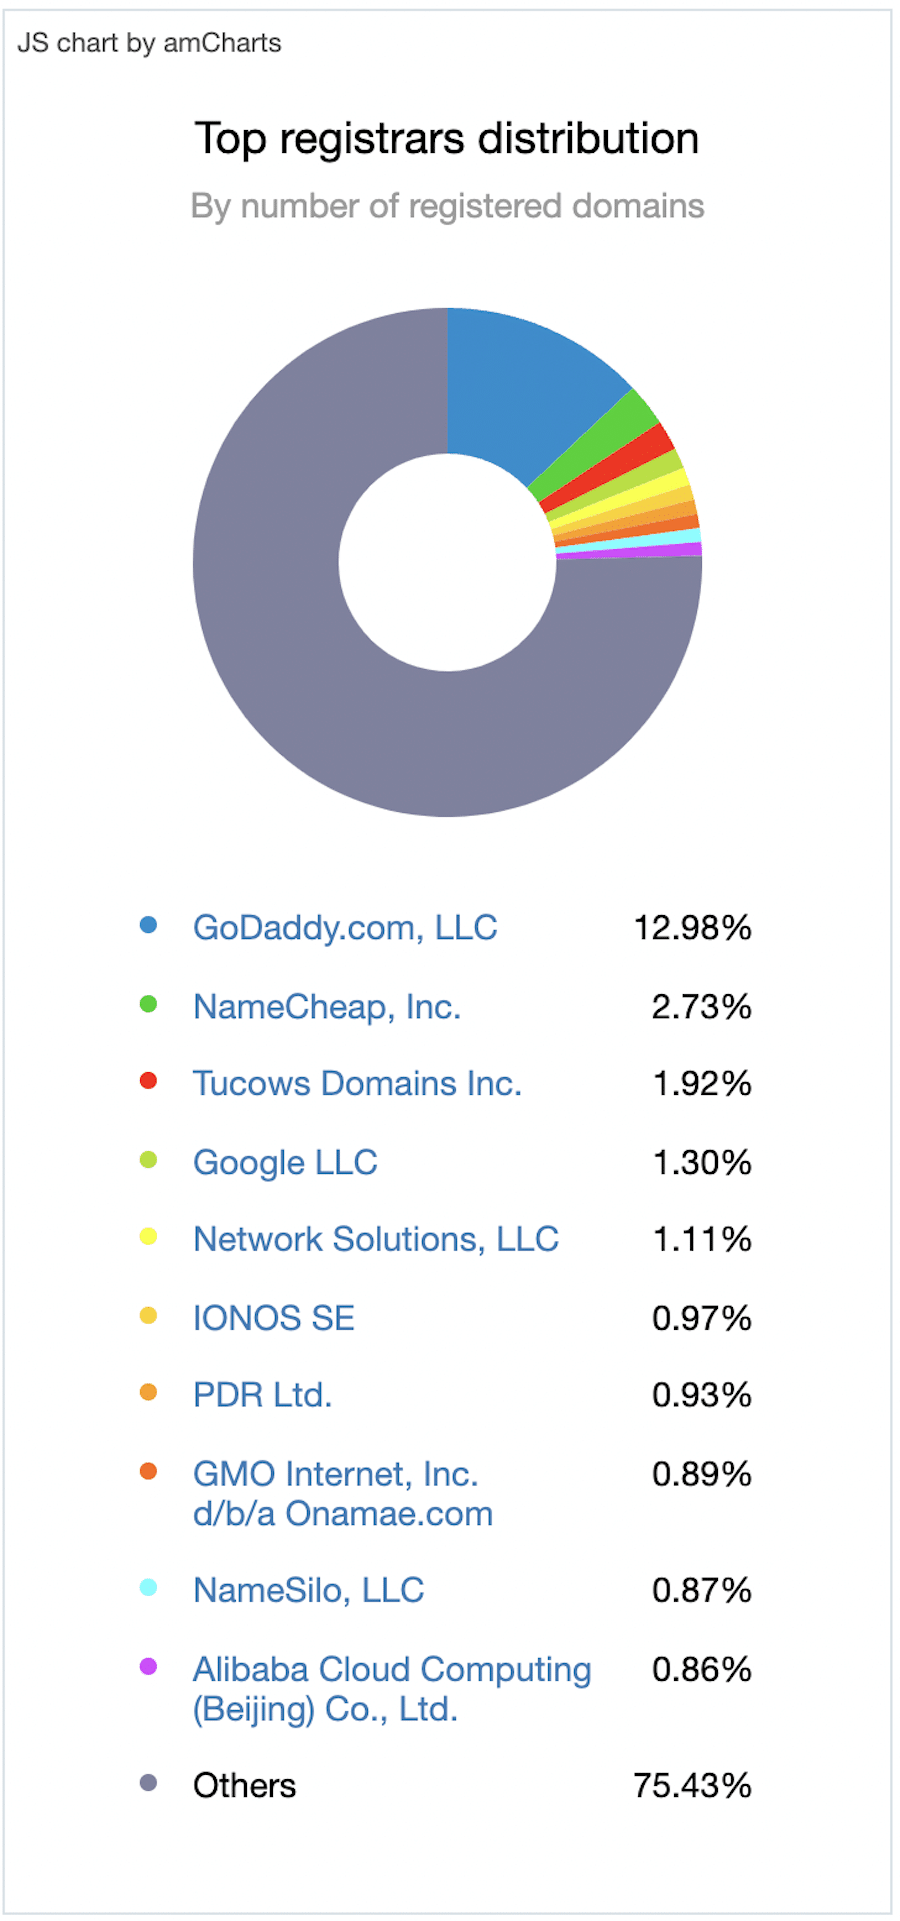 Google Domains vs. GoDaddy - Ein mehrfarbiges Tortendiagramm auf weißem Hintergrund zeigt die Top-Registrare nach Anzahl der registrierten Domains. GoDaddy hat mit 12,98% den größten Marktanteil. Google Domains hat 1,3%, aber 75,43% der Domain-Registrare sind unbekannt. 